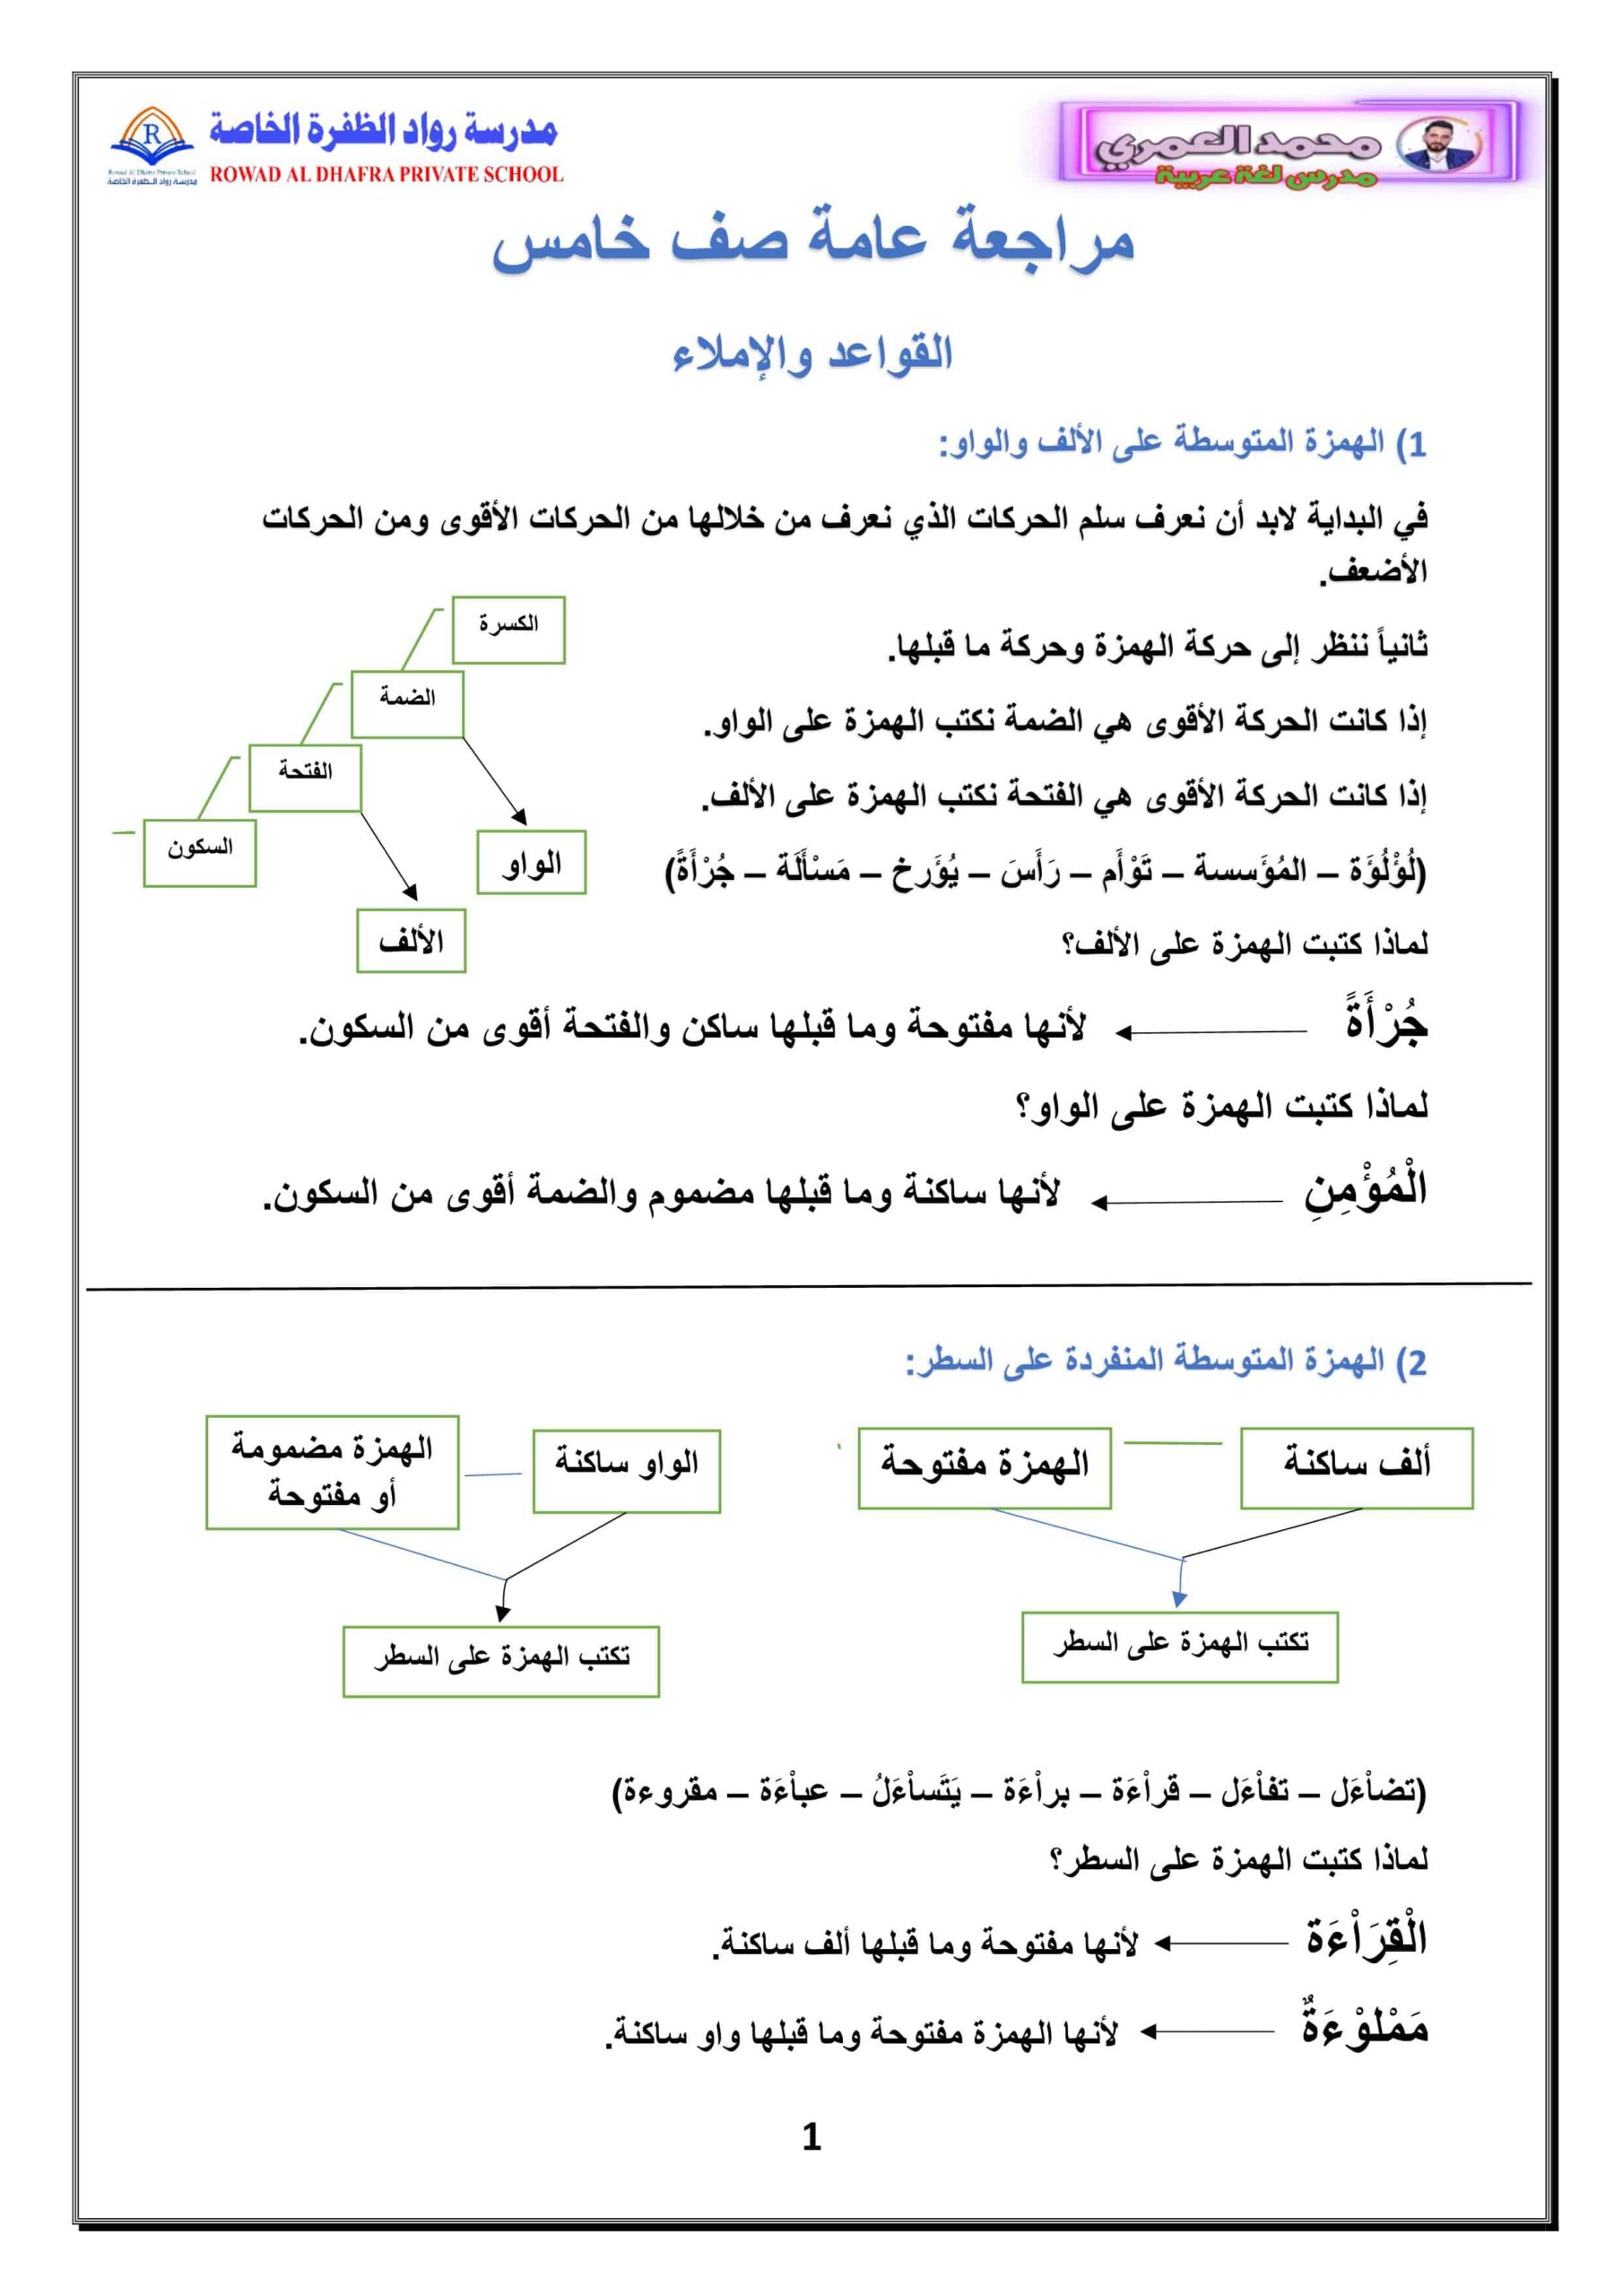 مراجعة عامة القواعد والإملاء اللغة العربية الصف الخامس 